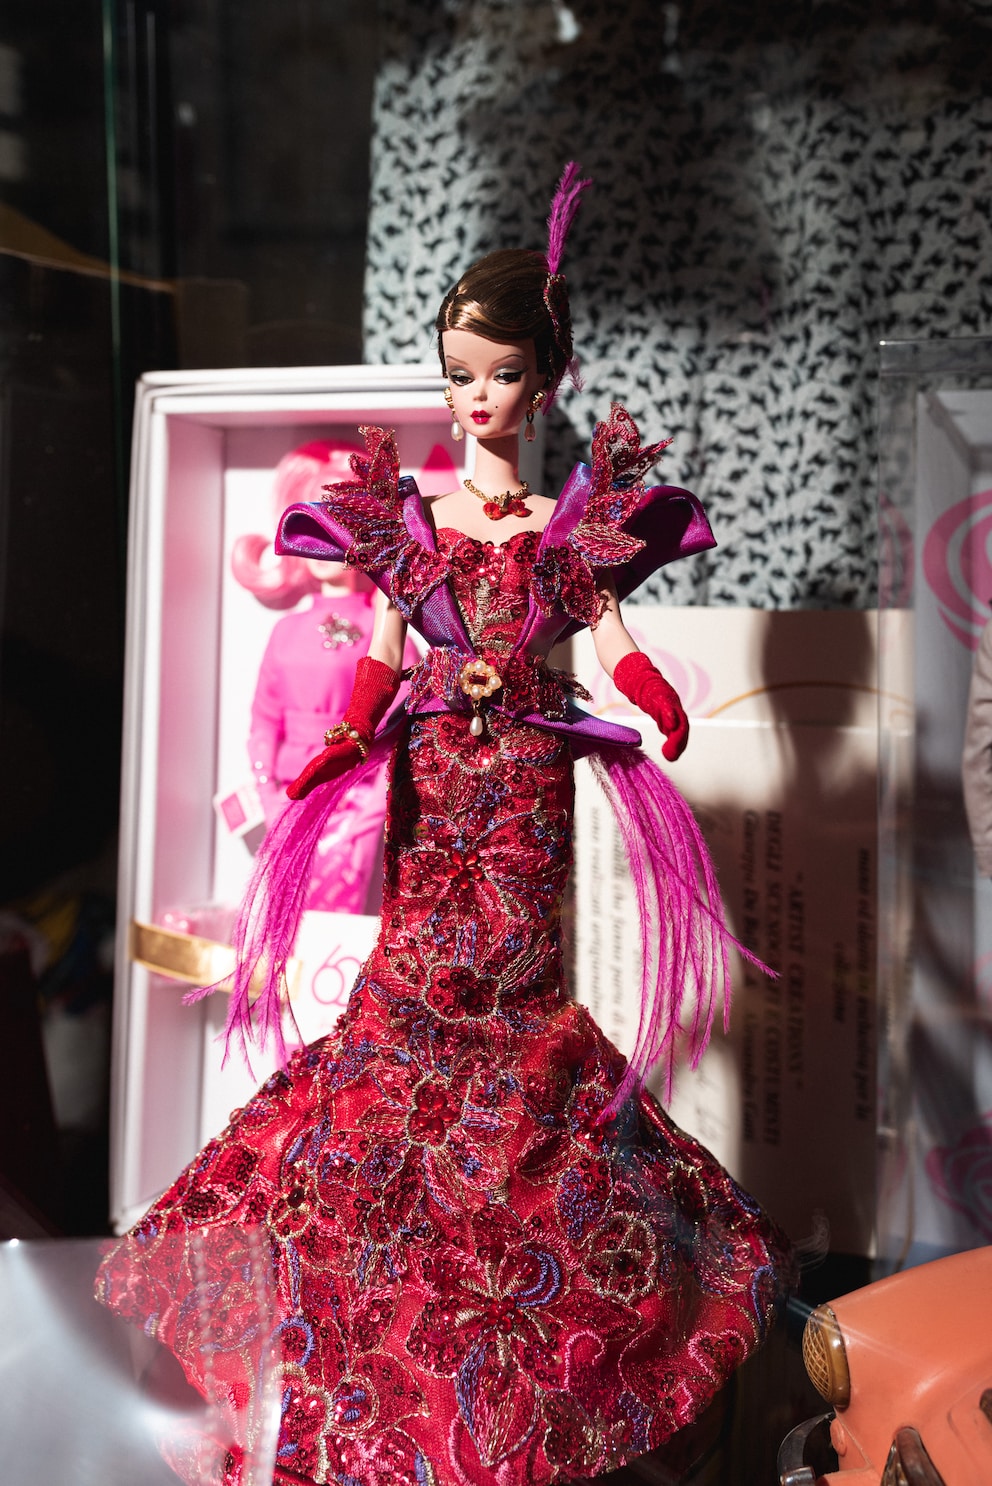 Diese Barbie gibt es nur einmal auf der Welt. Zumindest in dem Outfit.